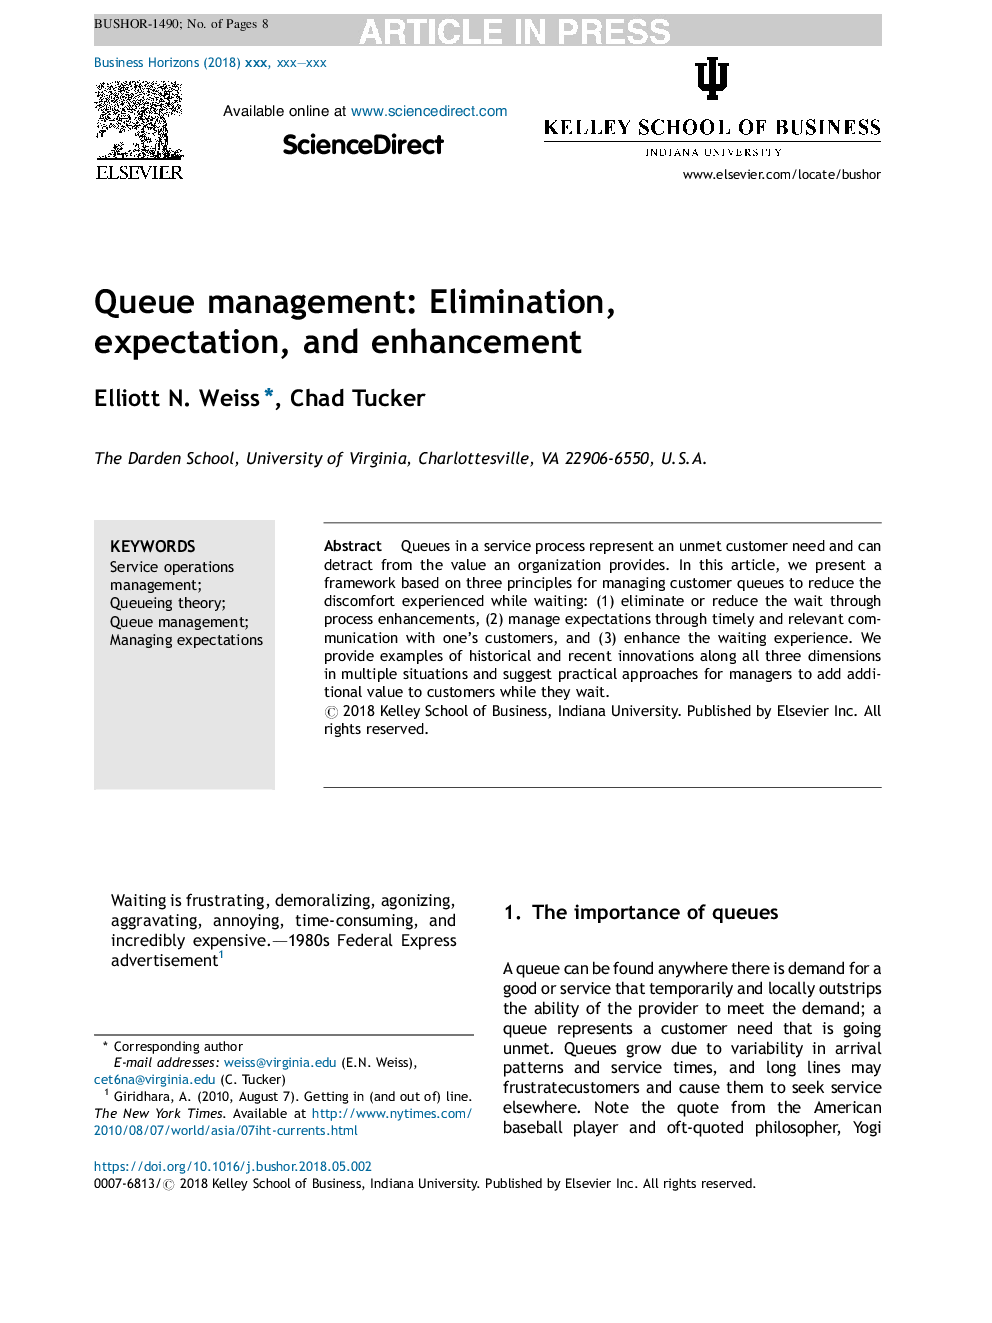 Queue management: Elimination, expectation, and enhancement